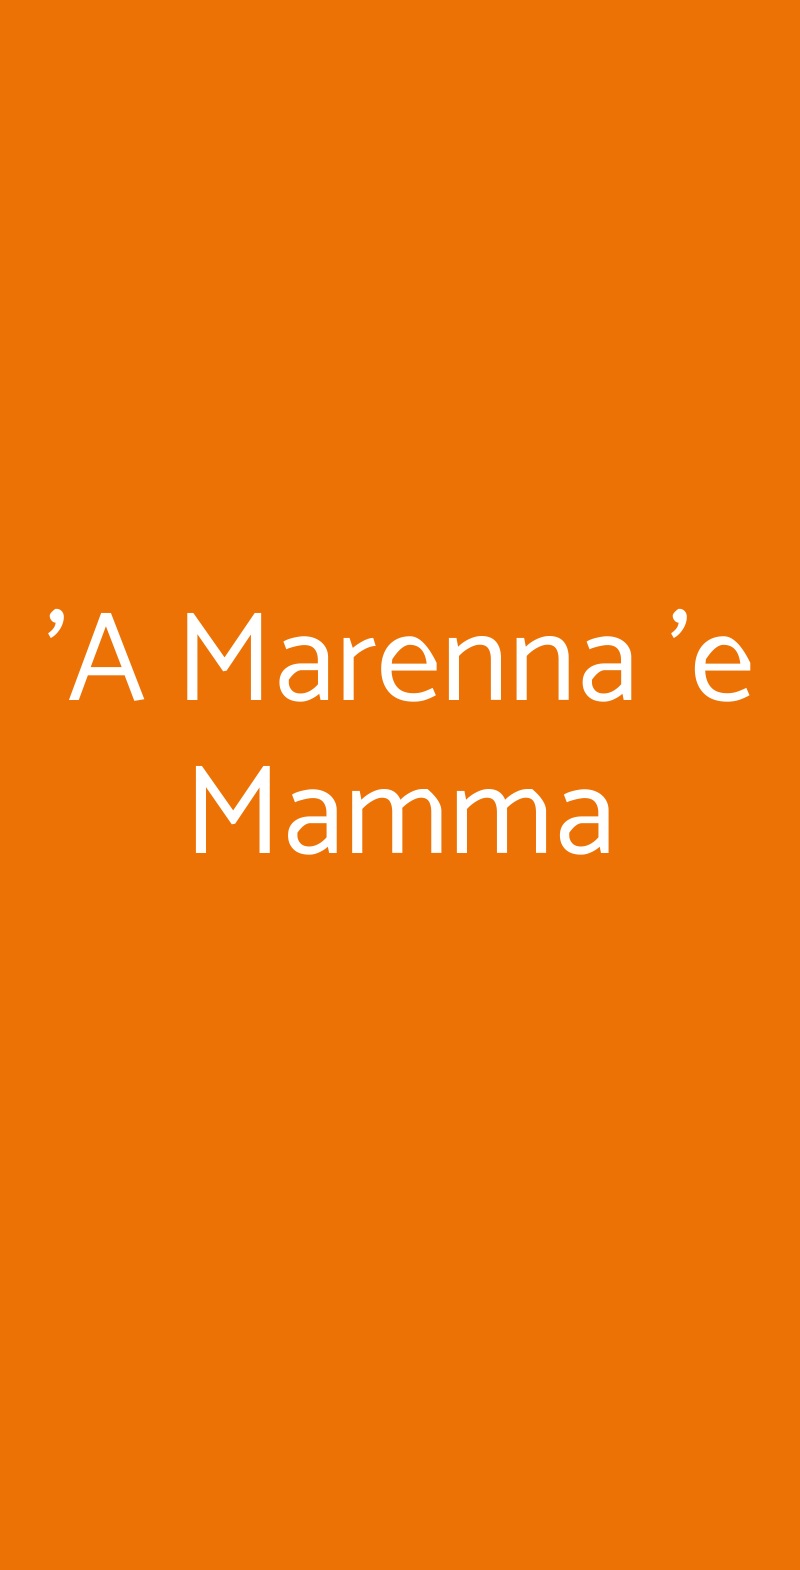 'A Marenna 'e Mamma Pozzuoli menù 1 pagina